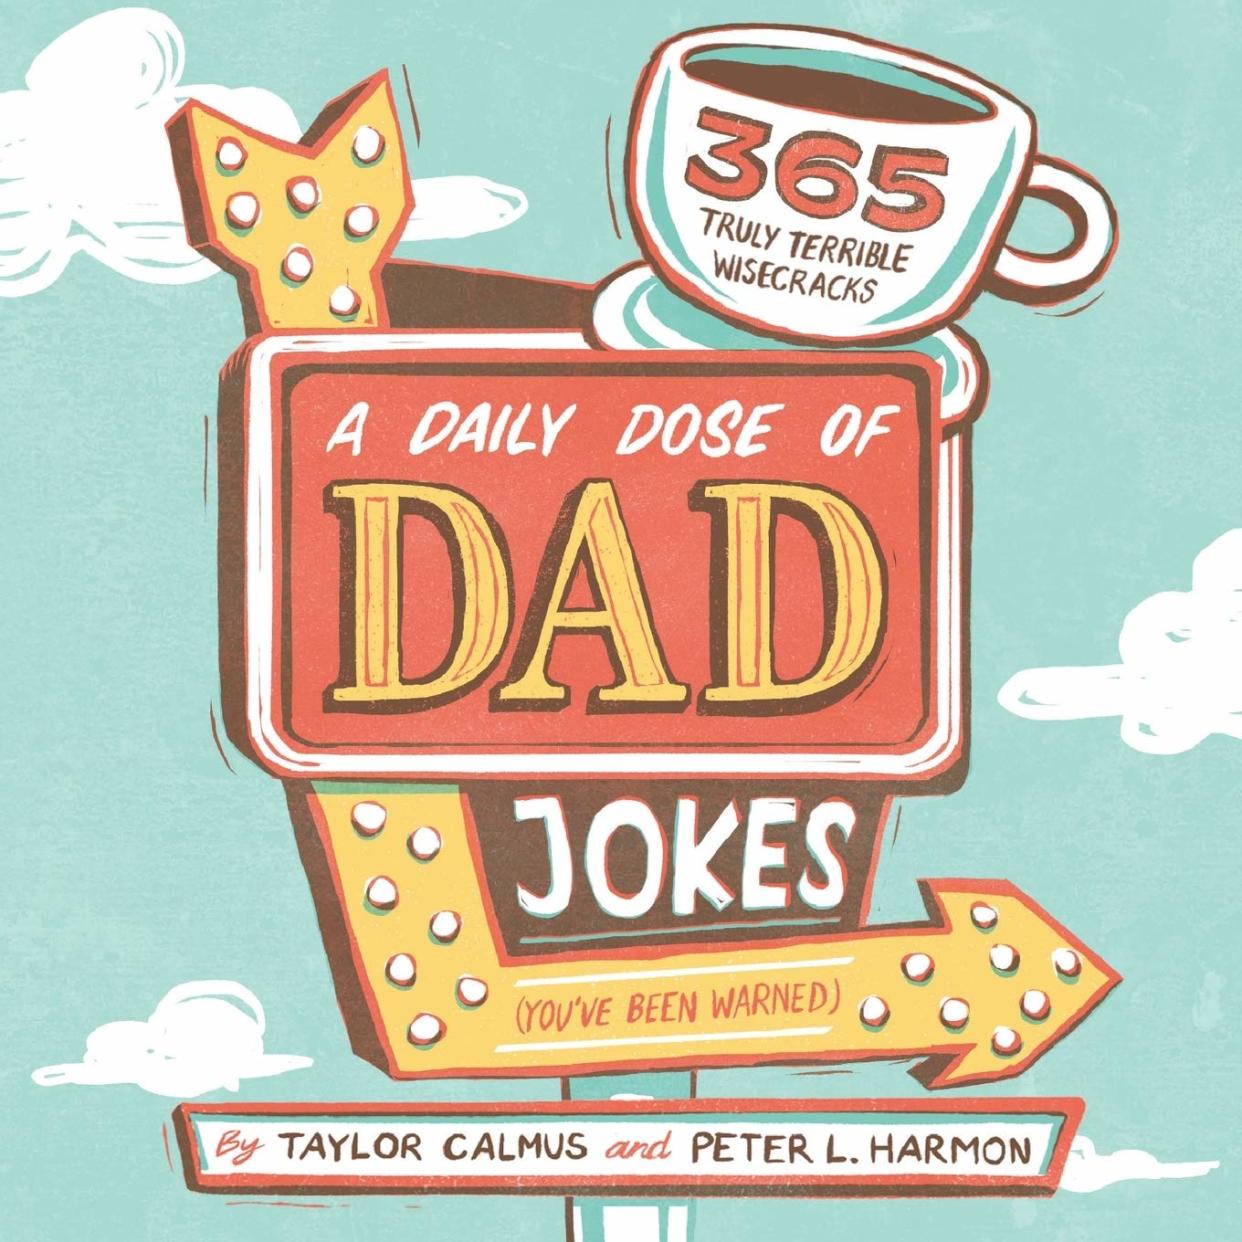 Dad jokes book